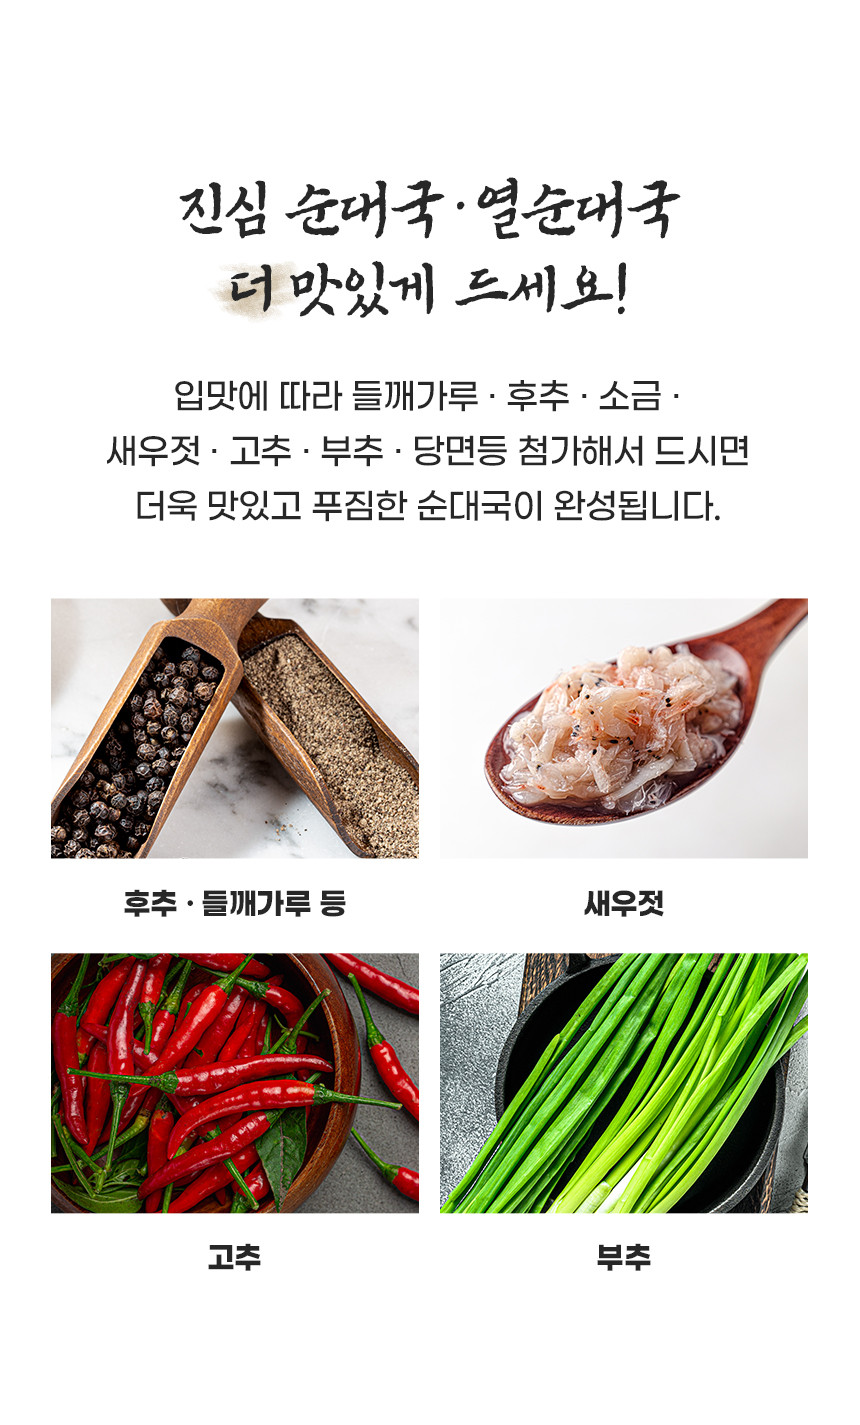 韓國食品-[Waegajib] 獐項洞辣米腸湯 700g